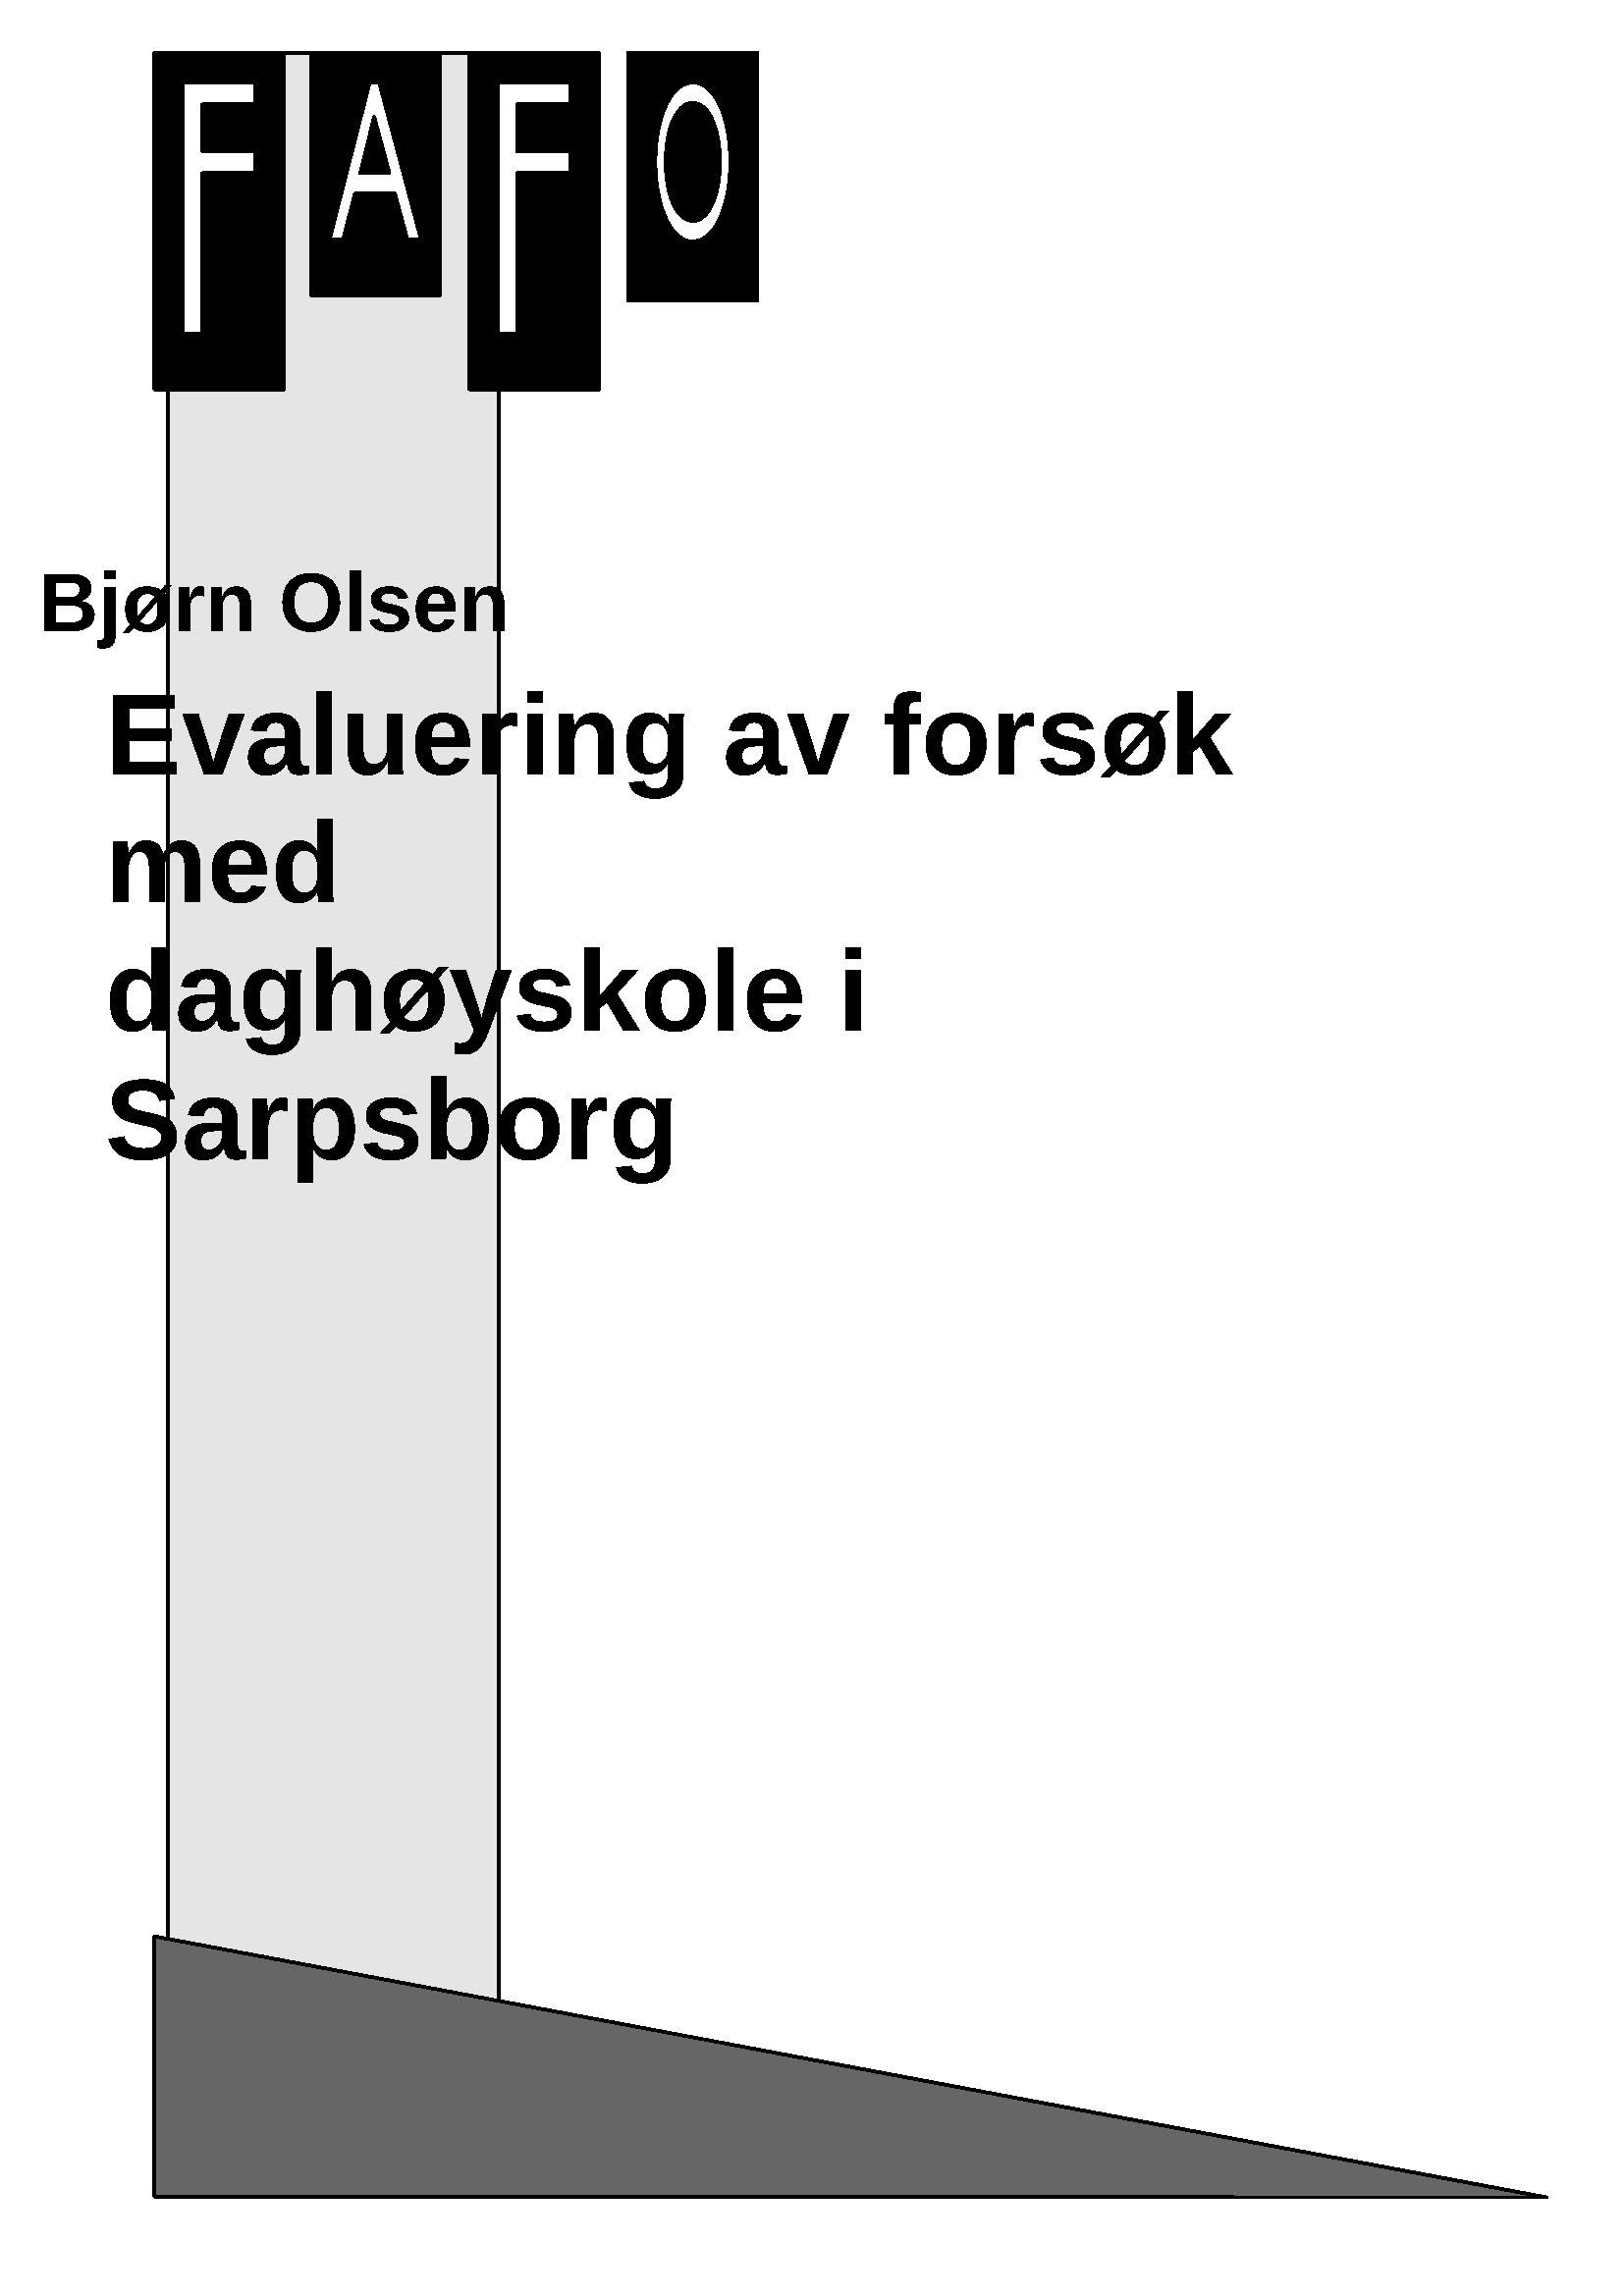 Evaluering av forsøk med daghøyskole i Sarpsborg